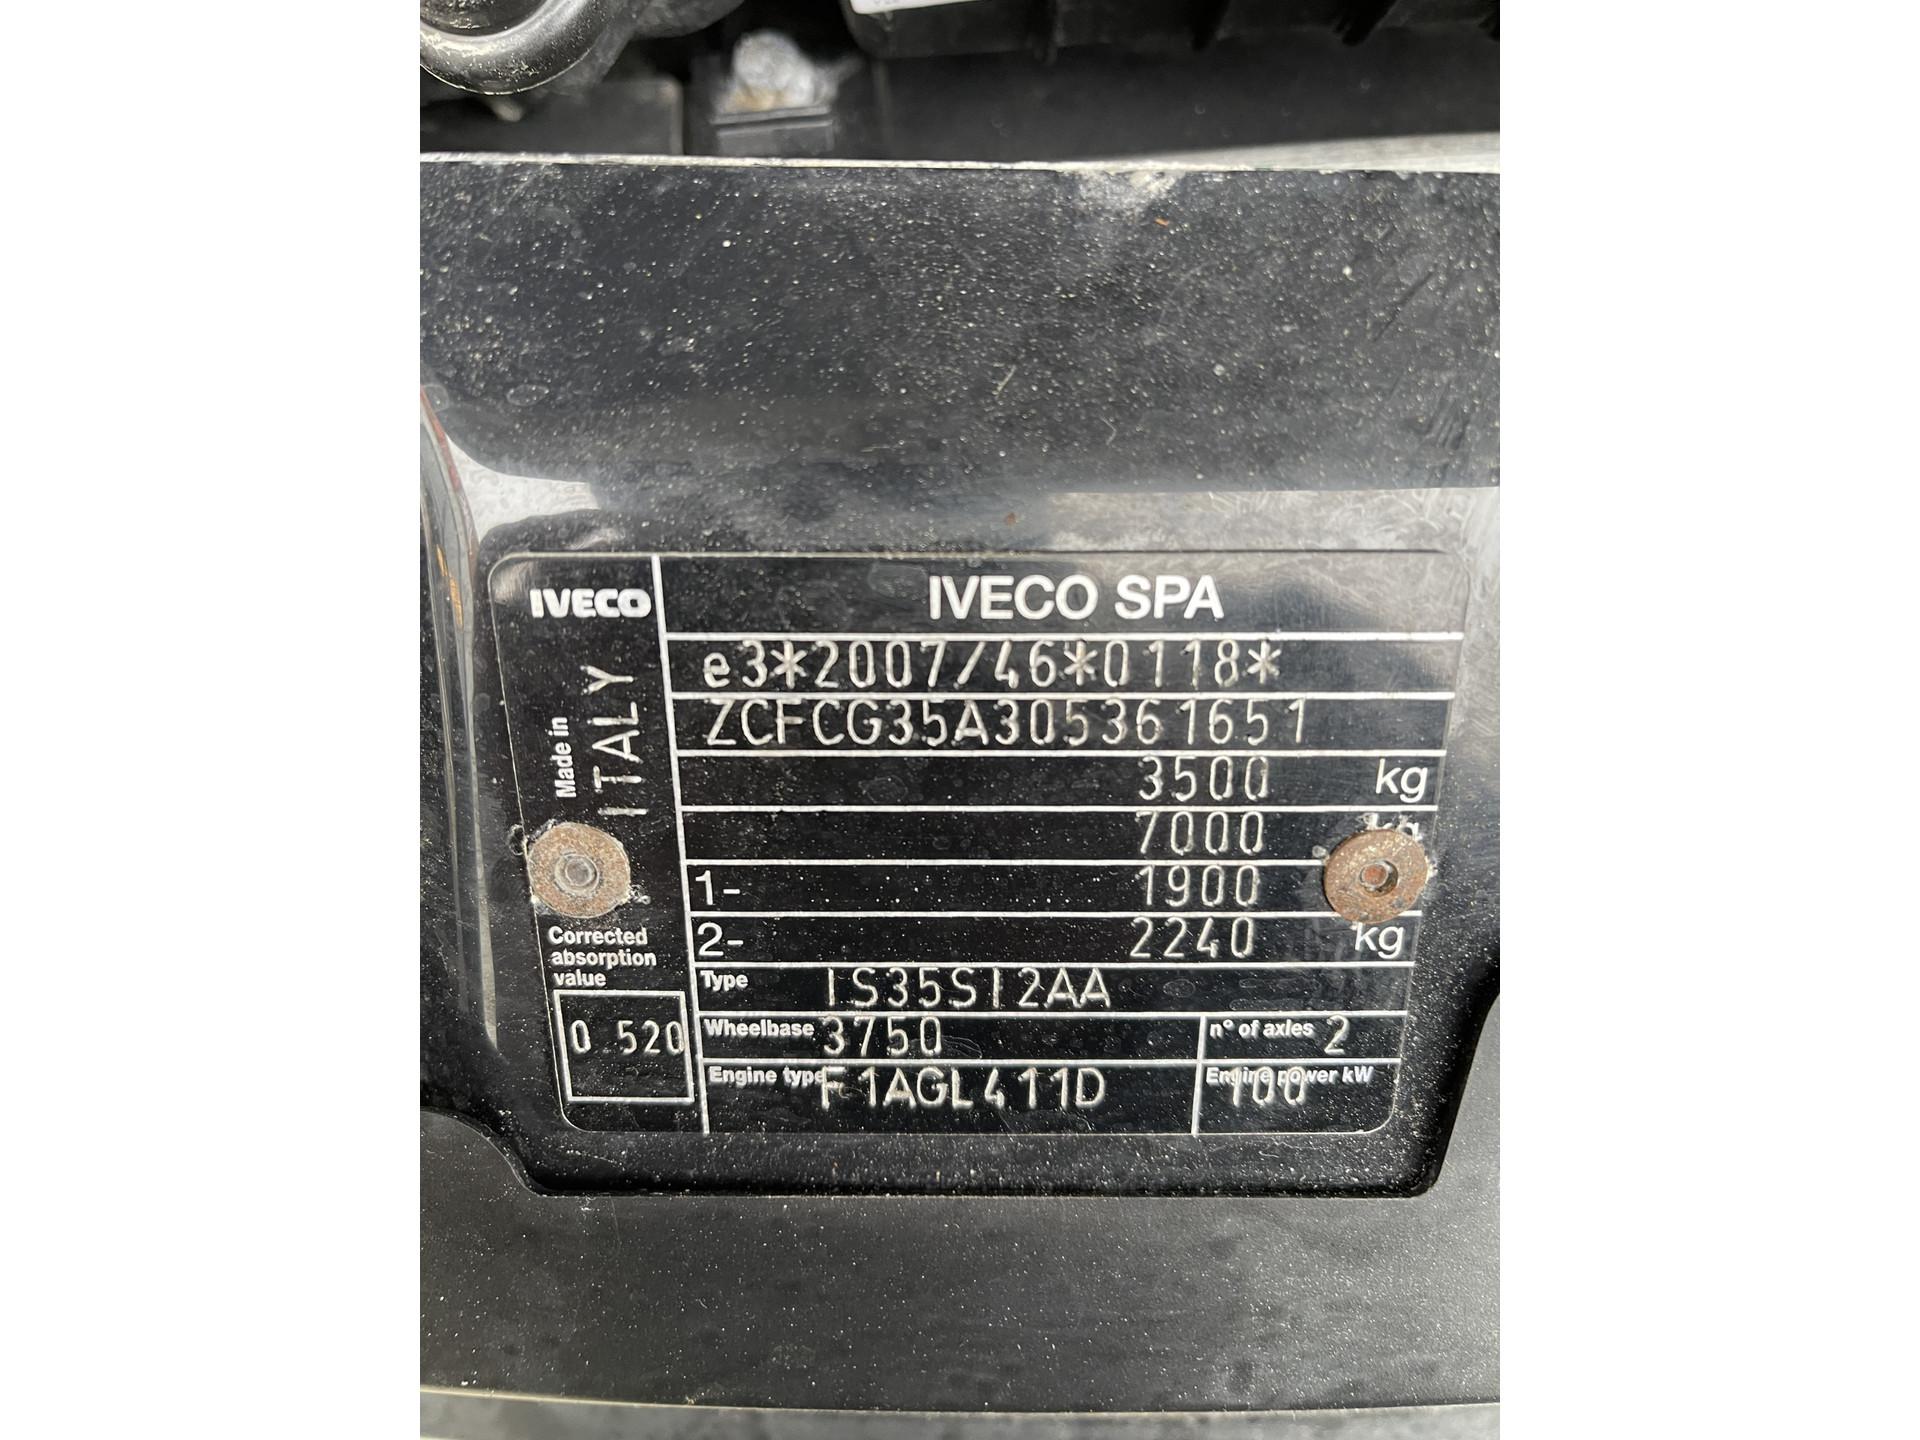 Foto 31 van Iveco Daily 35S14HA8 automaat / bakwagen met Zepro laadklep / vaste prijs rijklaar € 30.950 ex btw